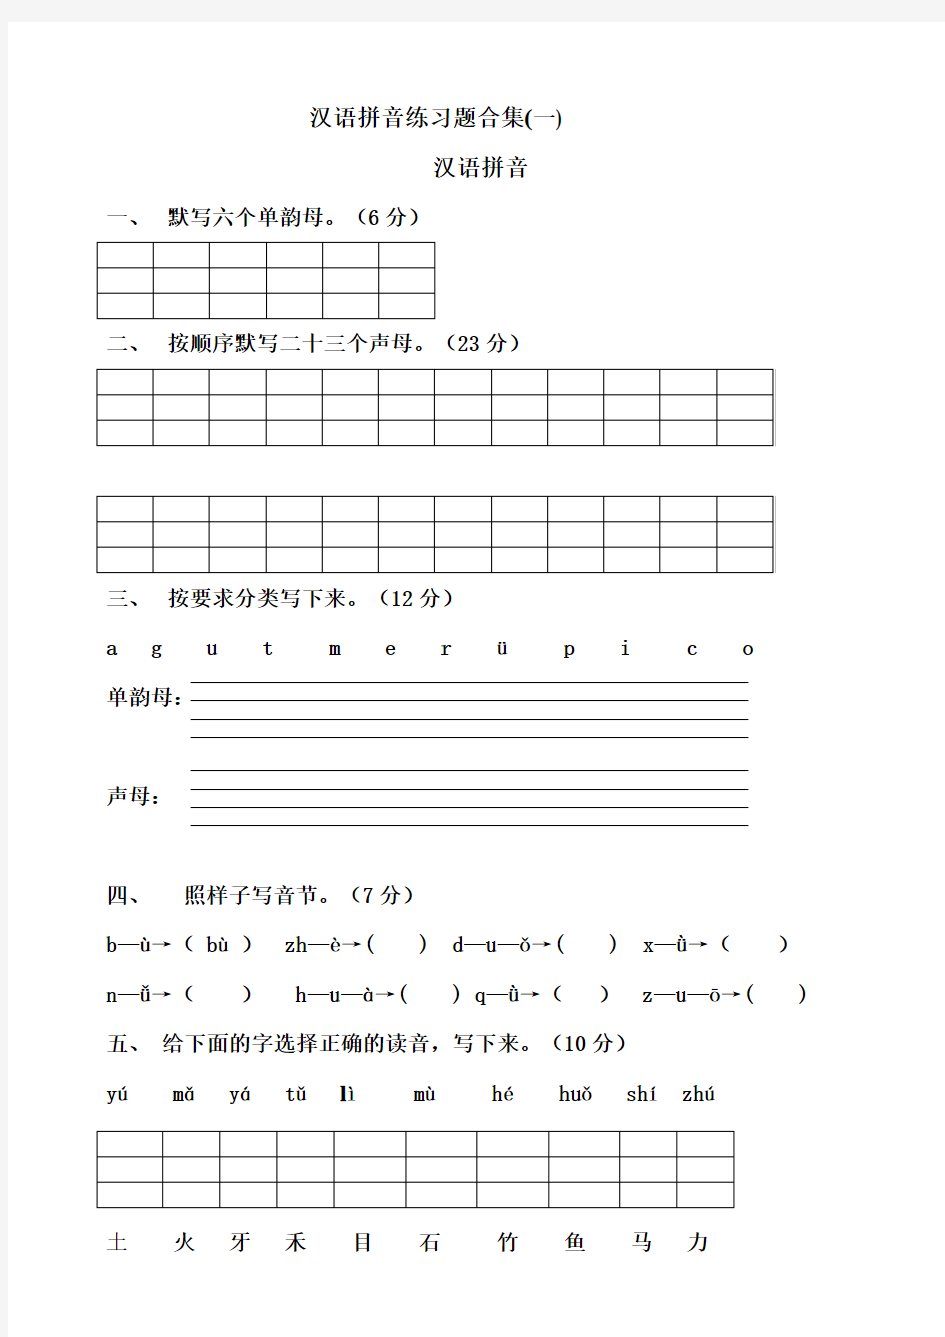 (完整版)一年级汉语拼音练习题合集